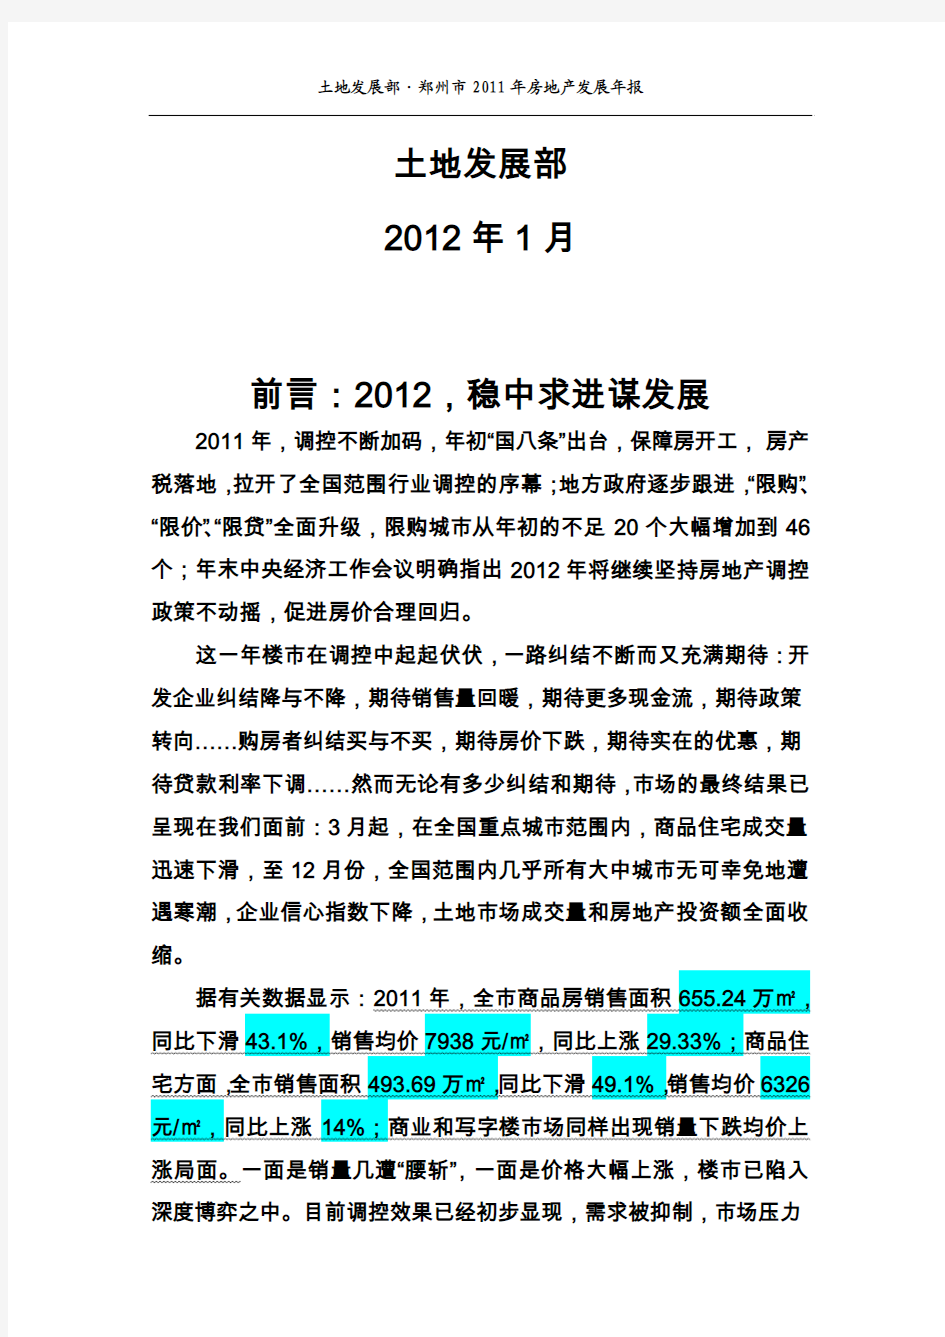 郑州市2011年房地产发展年报暨郑州市土地市场(房产)市场分析报告